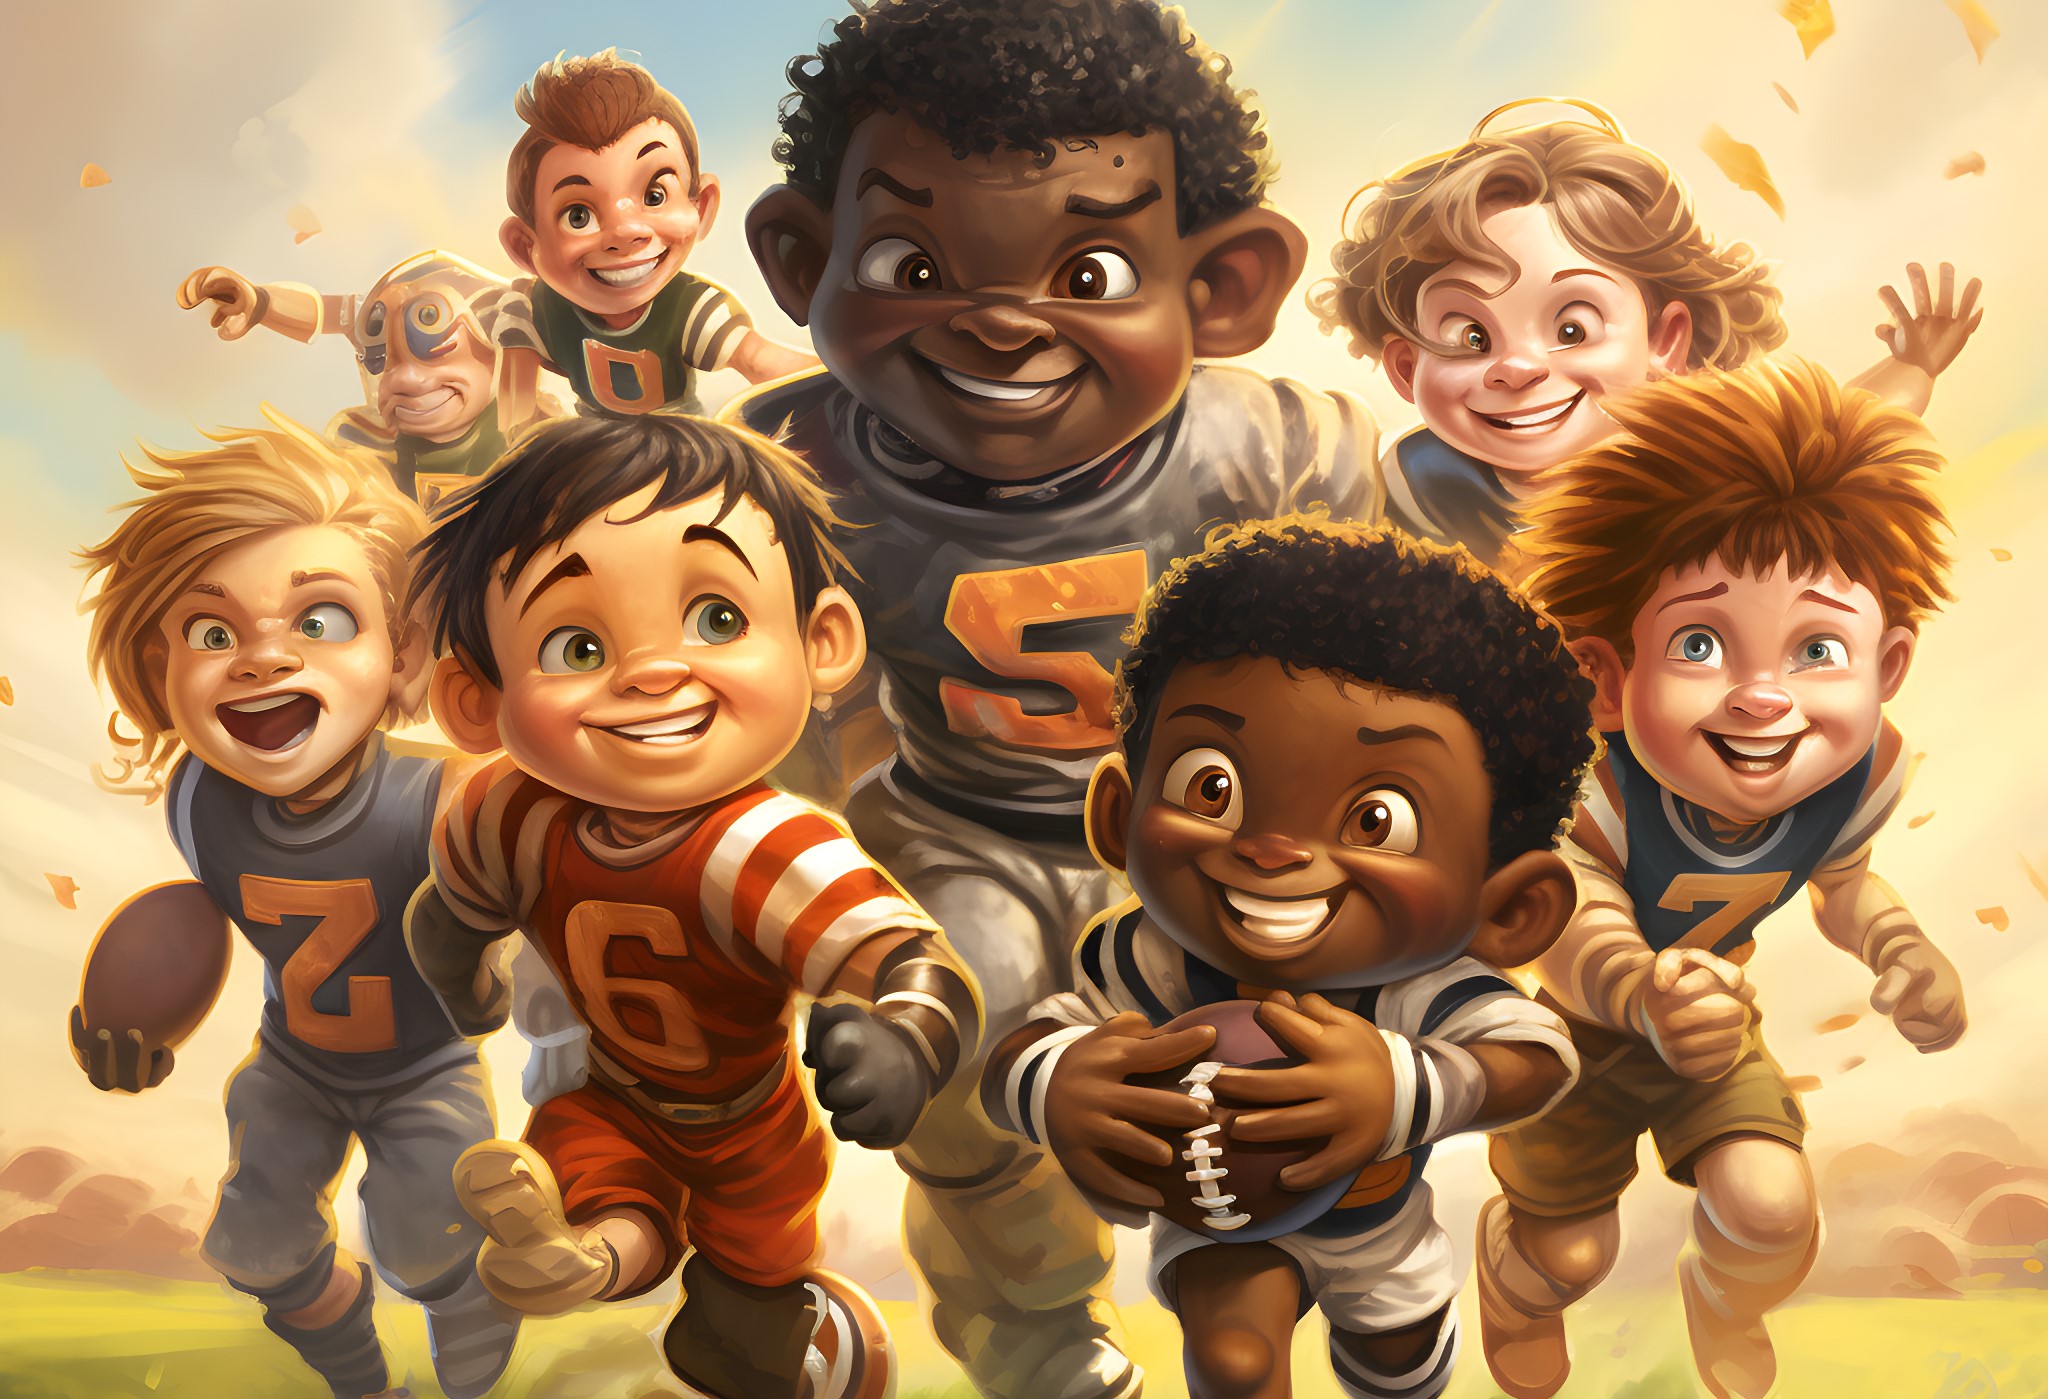 FootballR - NFL - Eine Gruppe kleiner Kinder läuft auf dem Feld. American Football